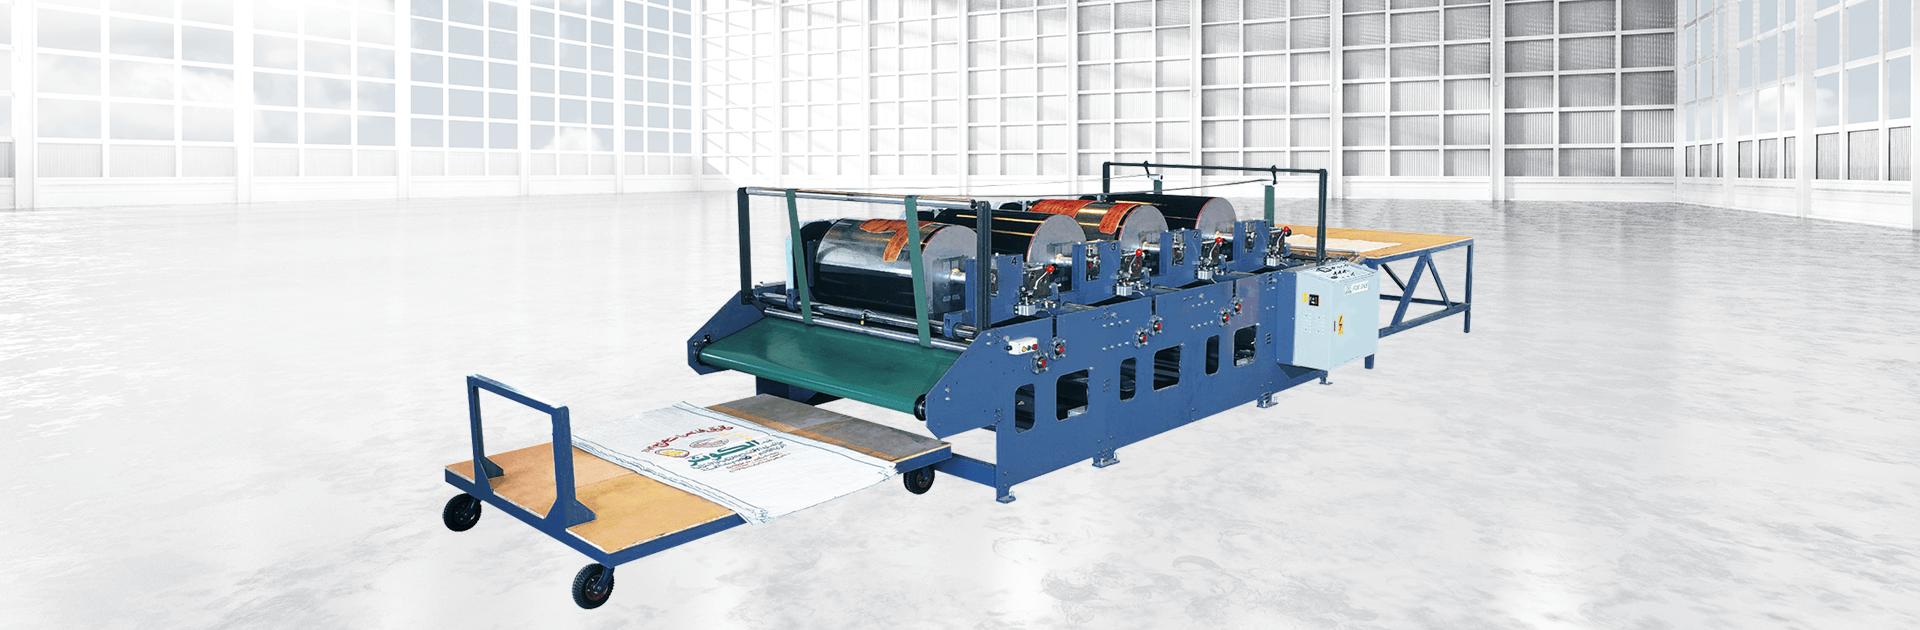 Одностороняя 1 ~ 4 цветная печатная машина для МКР